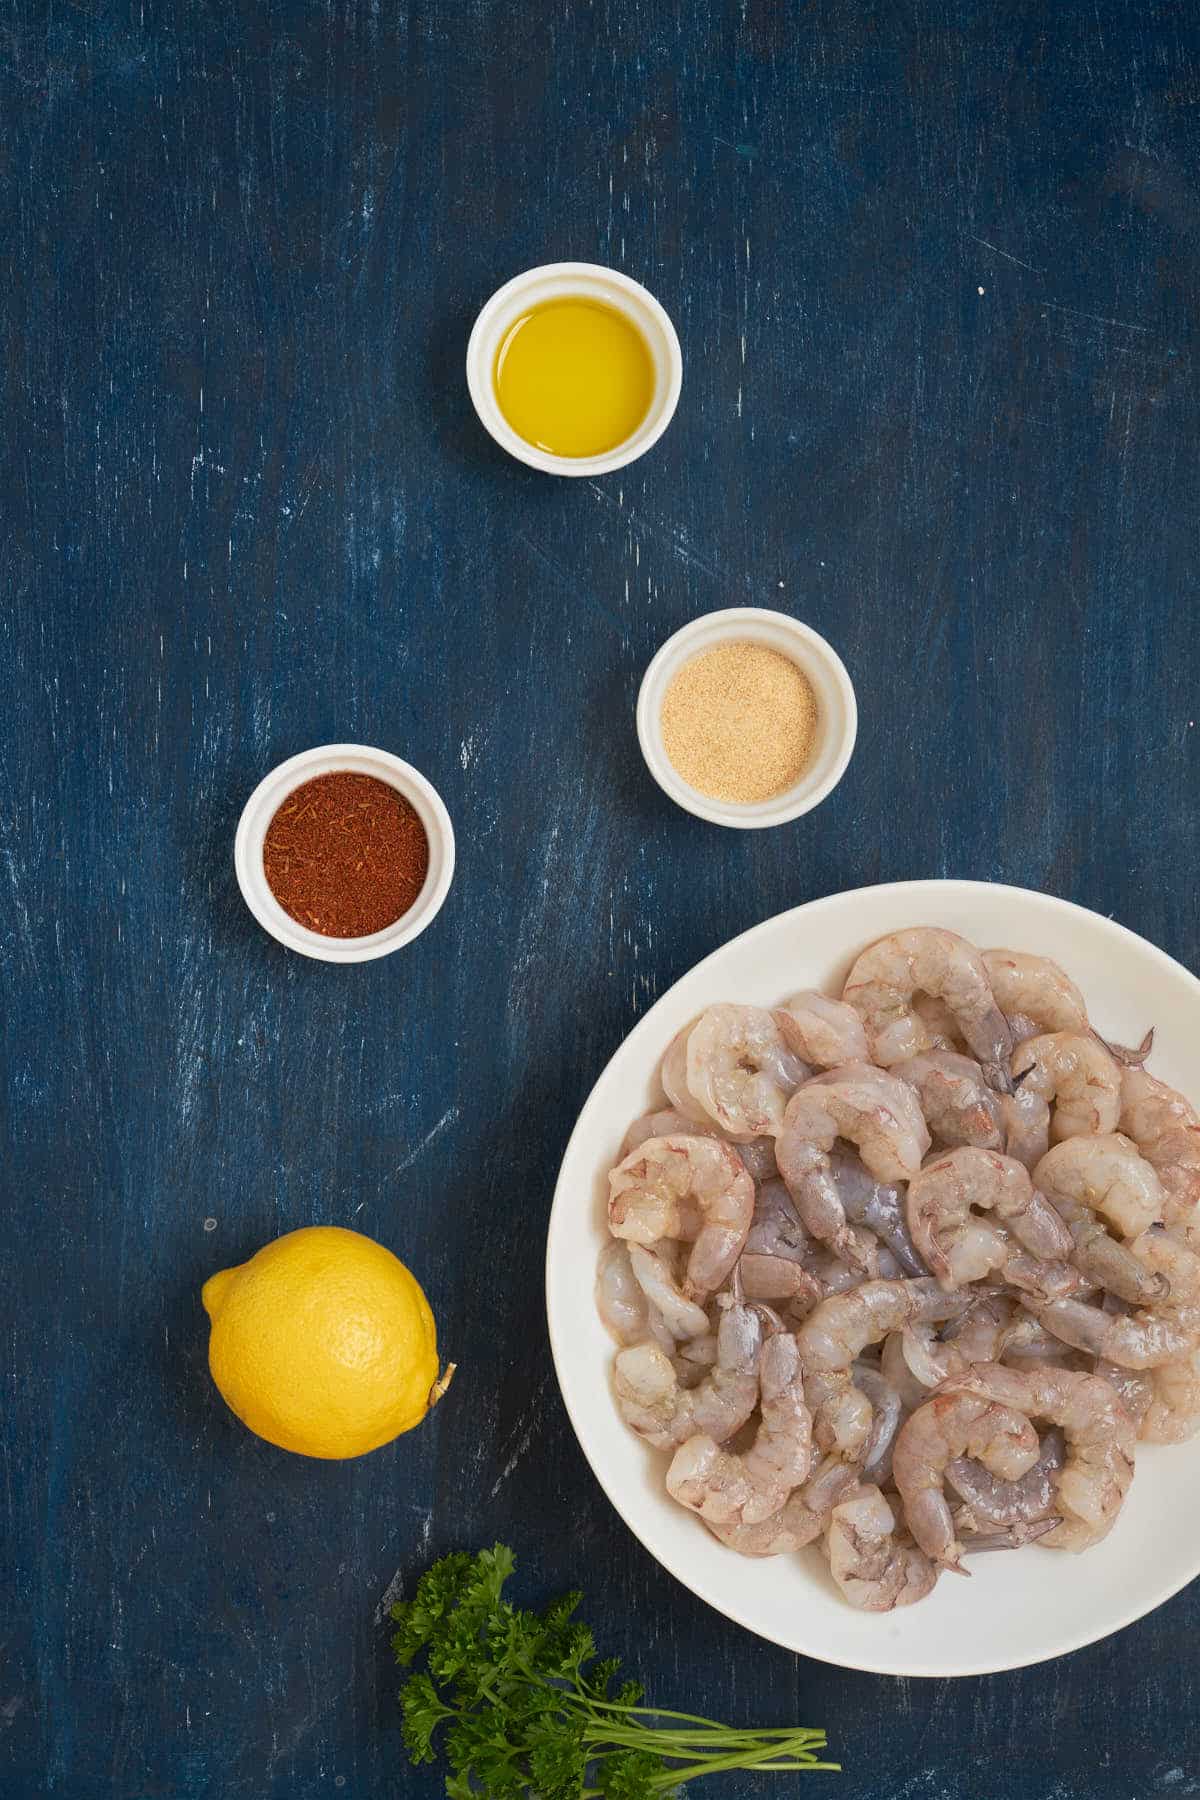 Ingredients to make cajun shrimp.